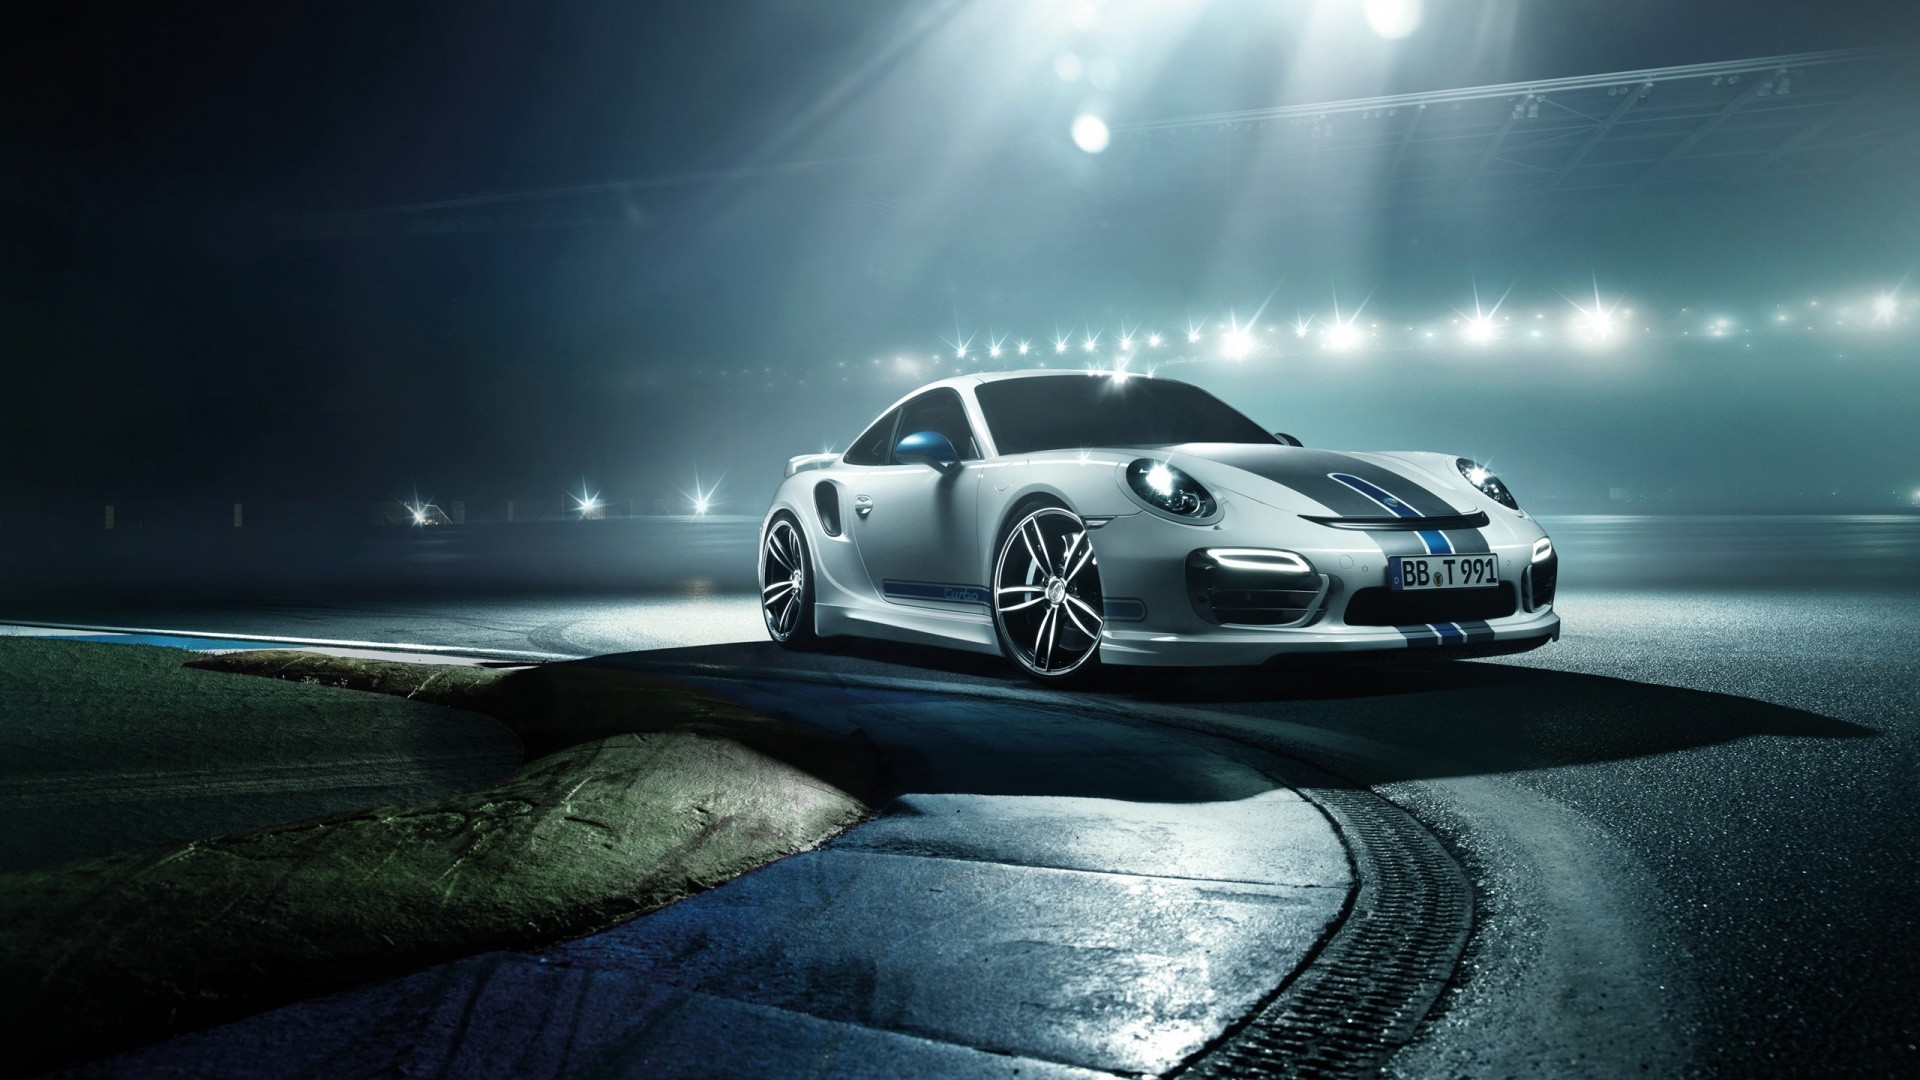 Porsche: Khi nhắc đến Porsche, người ta thường nghĩ đến một hãng sản xuất ô tô danh tiếng và được yêu thích trên toàn thế giới. Với những thiết kế tinh tế và sức mạnh vượt trội, những chiếc xe Porsche thực sự là một cơn sốt. Hãy xem hình ảnh về những chiếc xe này để hiểu rõ hơn về sự độc đáo và sang trọng của chúng.